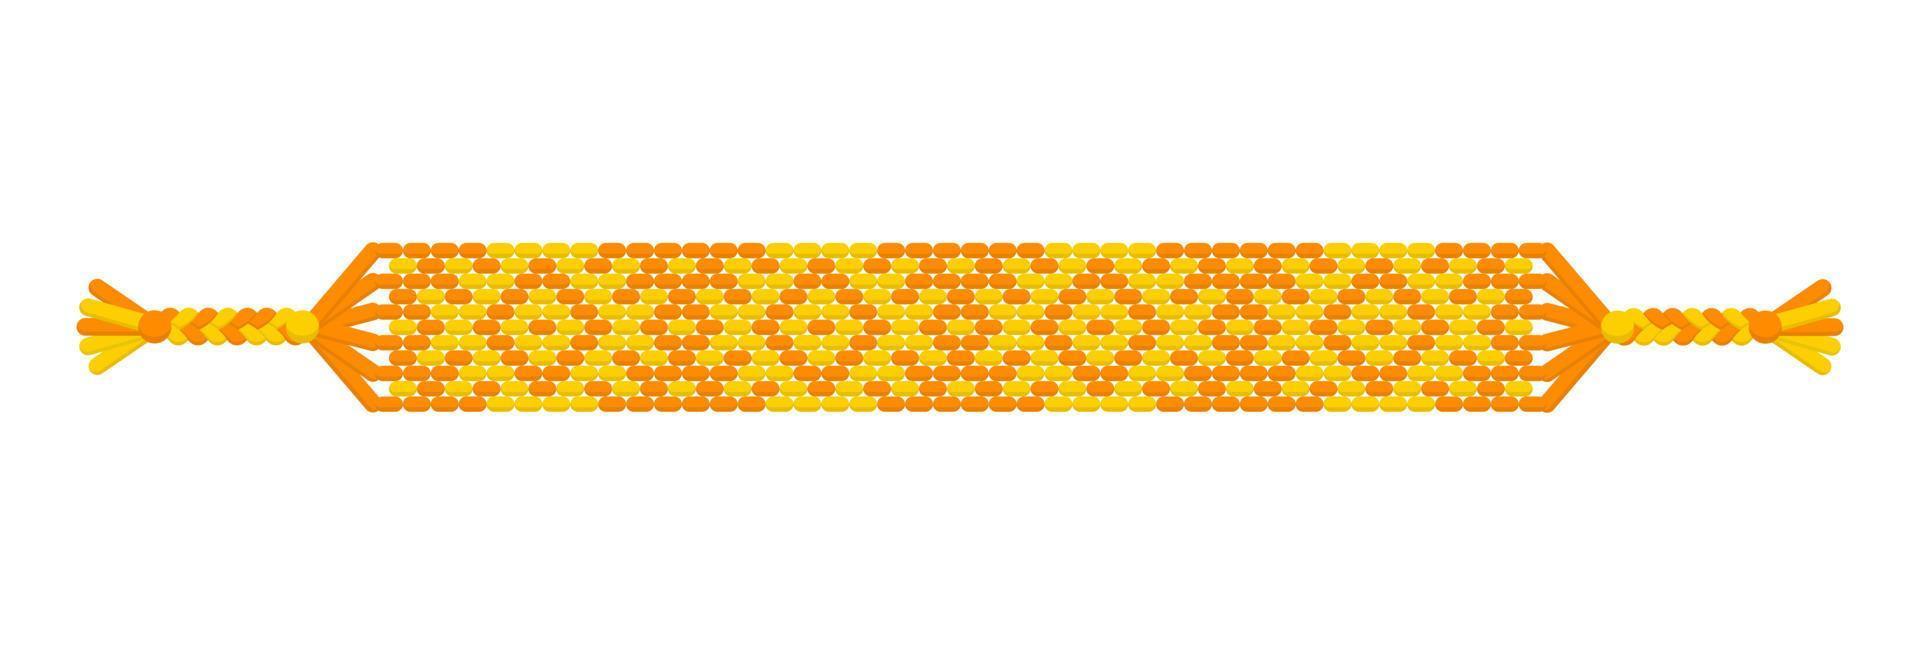 vector veelkleurige handgemaakte hippie vriendschap armband van gele en oranje draden.